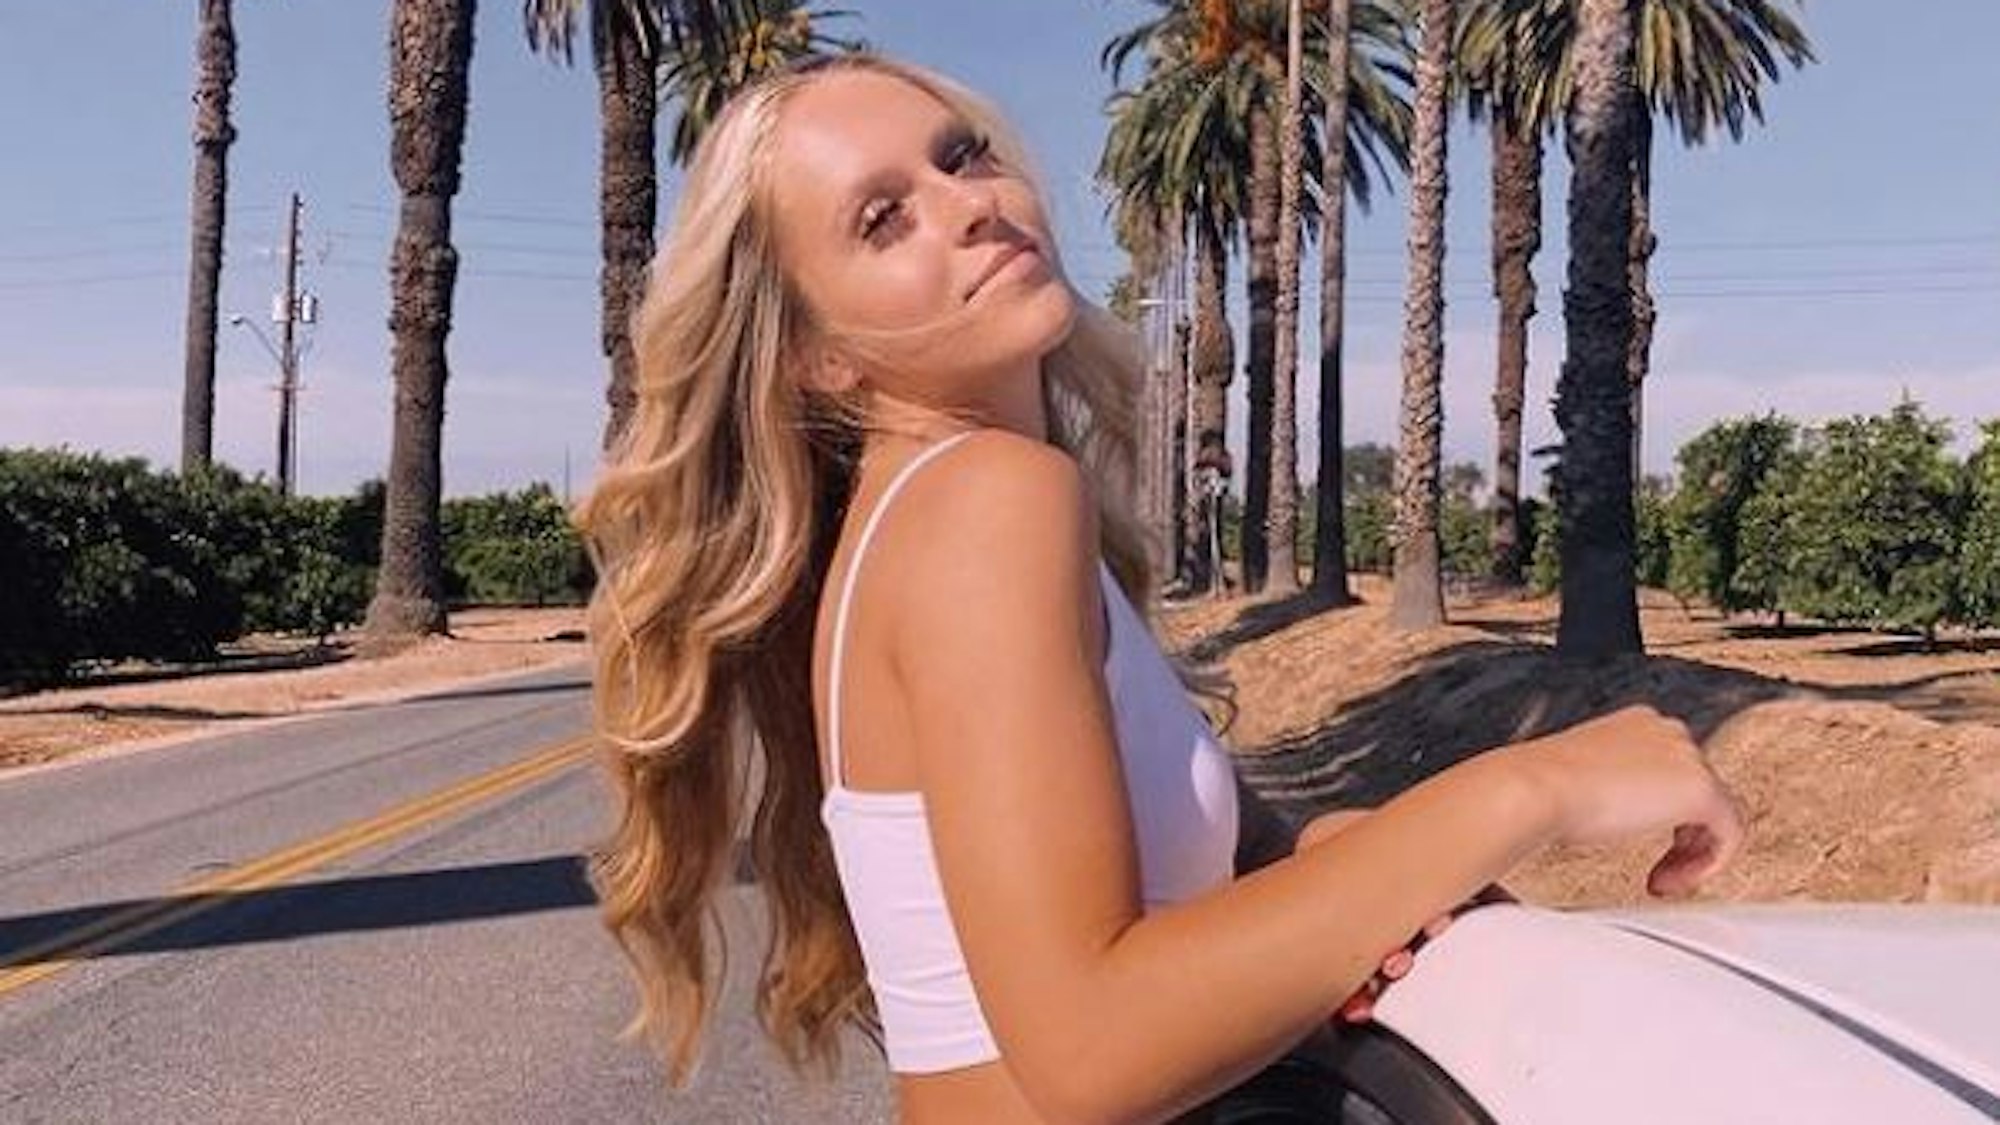 Die Teenagerin Rylee Goodrich sitzt im Fenster eines Autos, das auf einer mit Palmen gesäumten Straße steht.